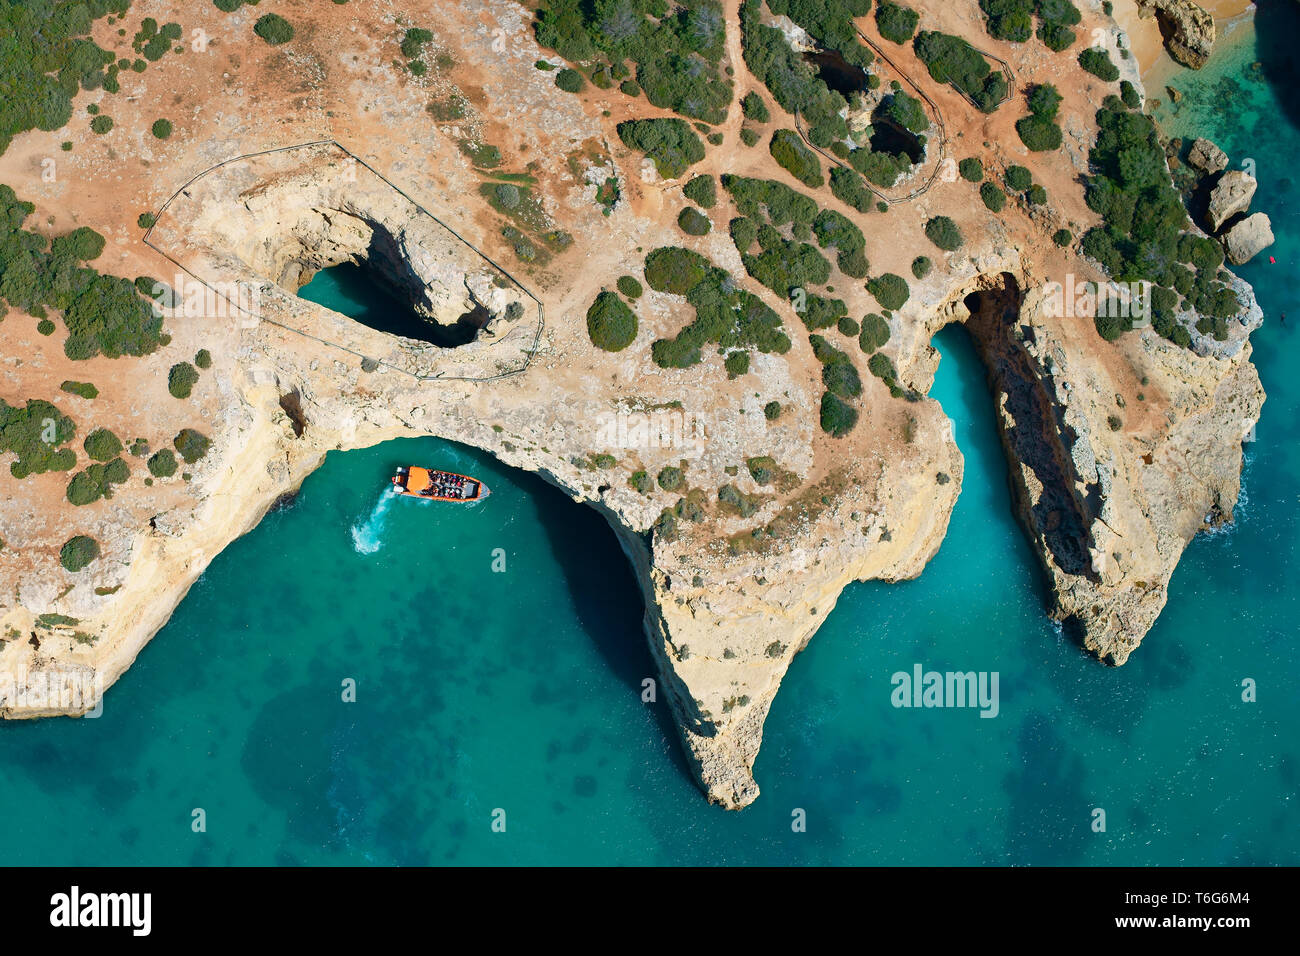 LUFTAUFNAHME. Sightseeing-Boot nähert sich einer Meereshöhle / Sinkhole an der felsigen Küste in der Nähe von Albandeira. Lagoa, Algarve, Portugal. Stockfoto